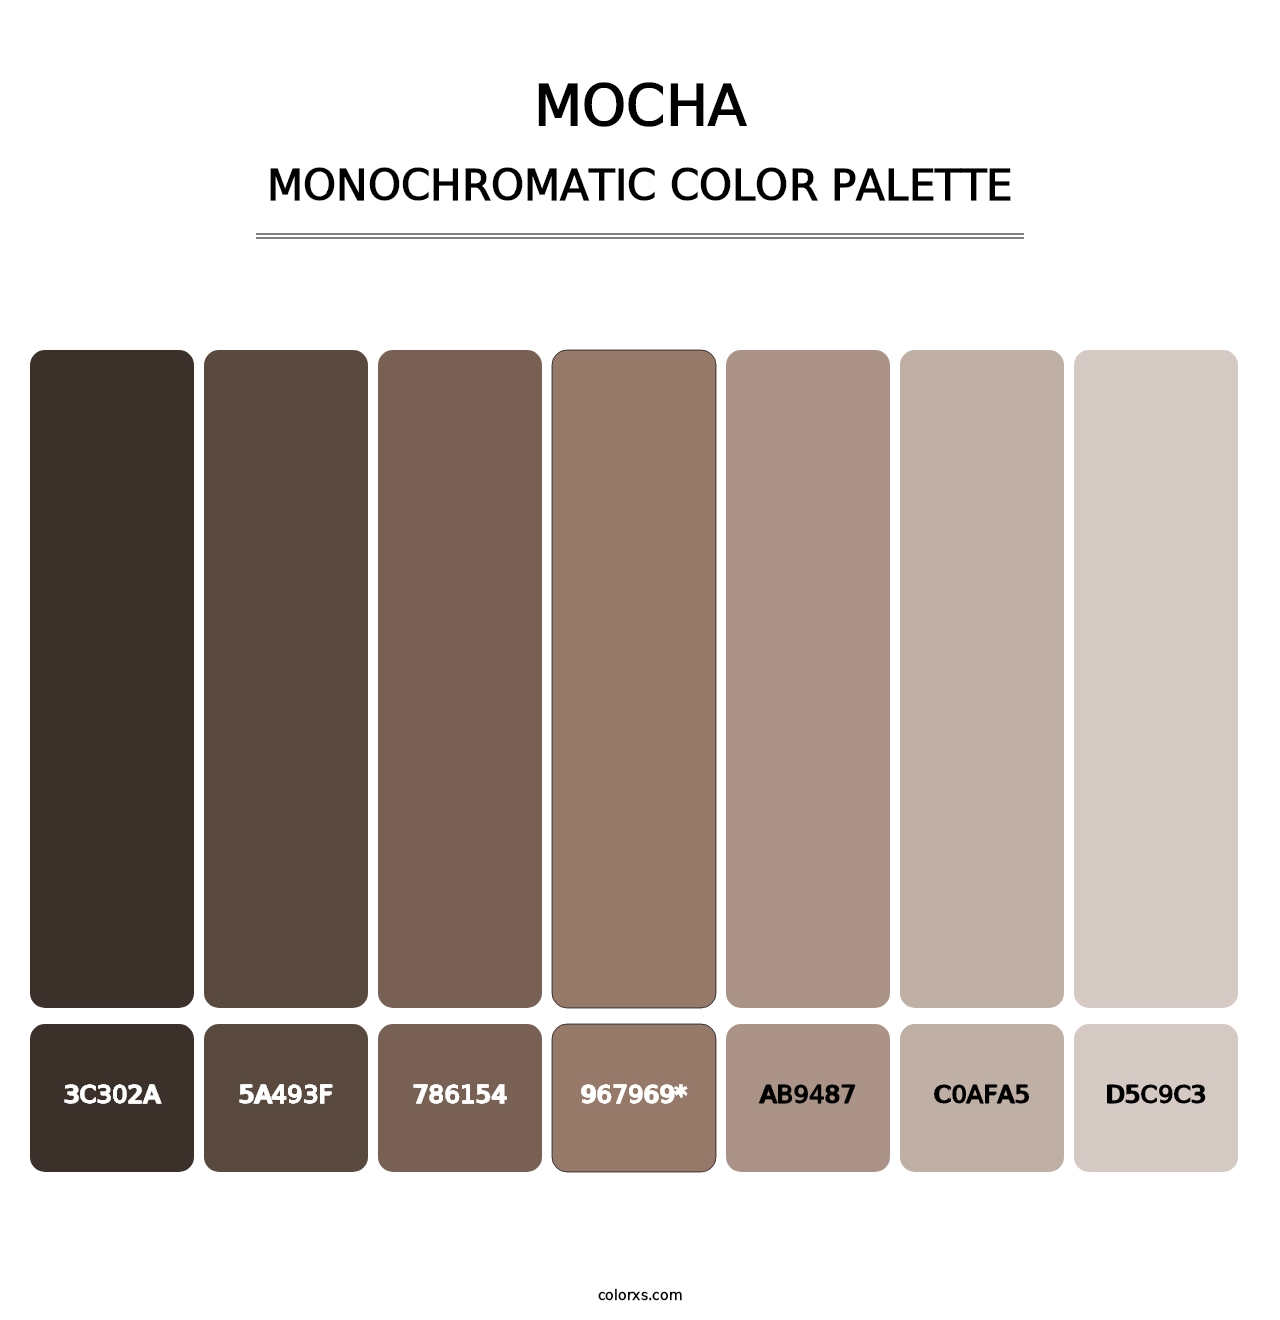 Mocha - Monochromatic Color Palette